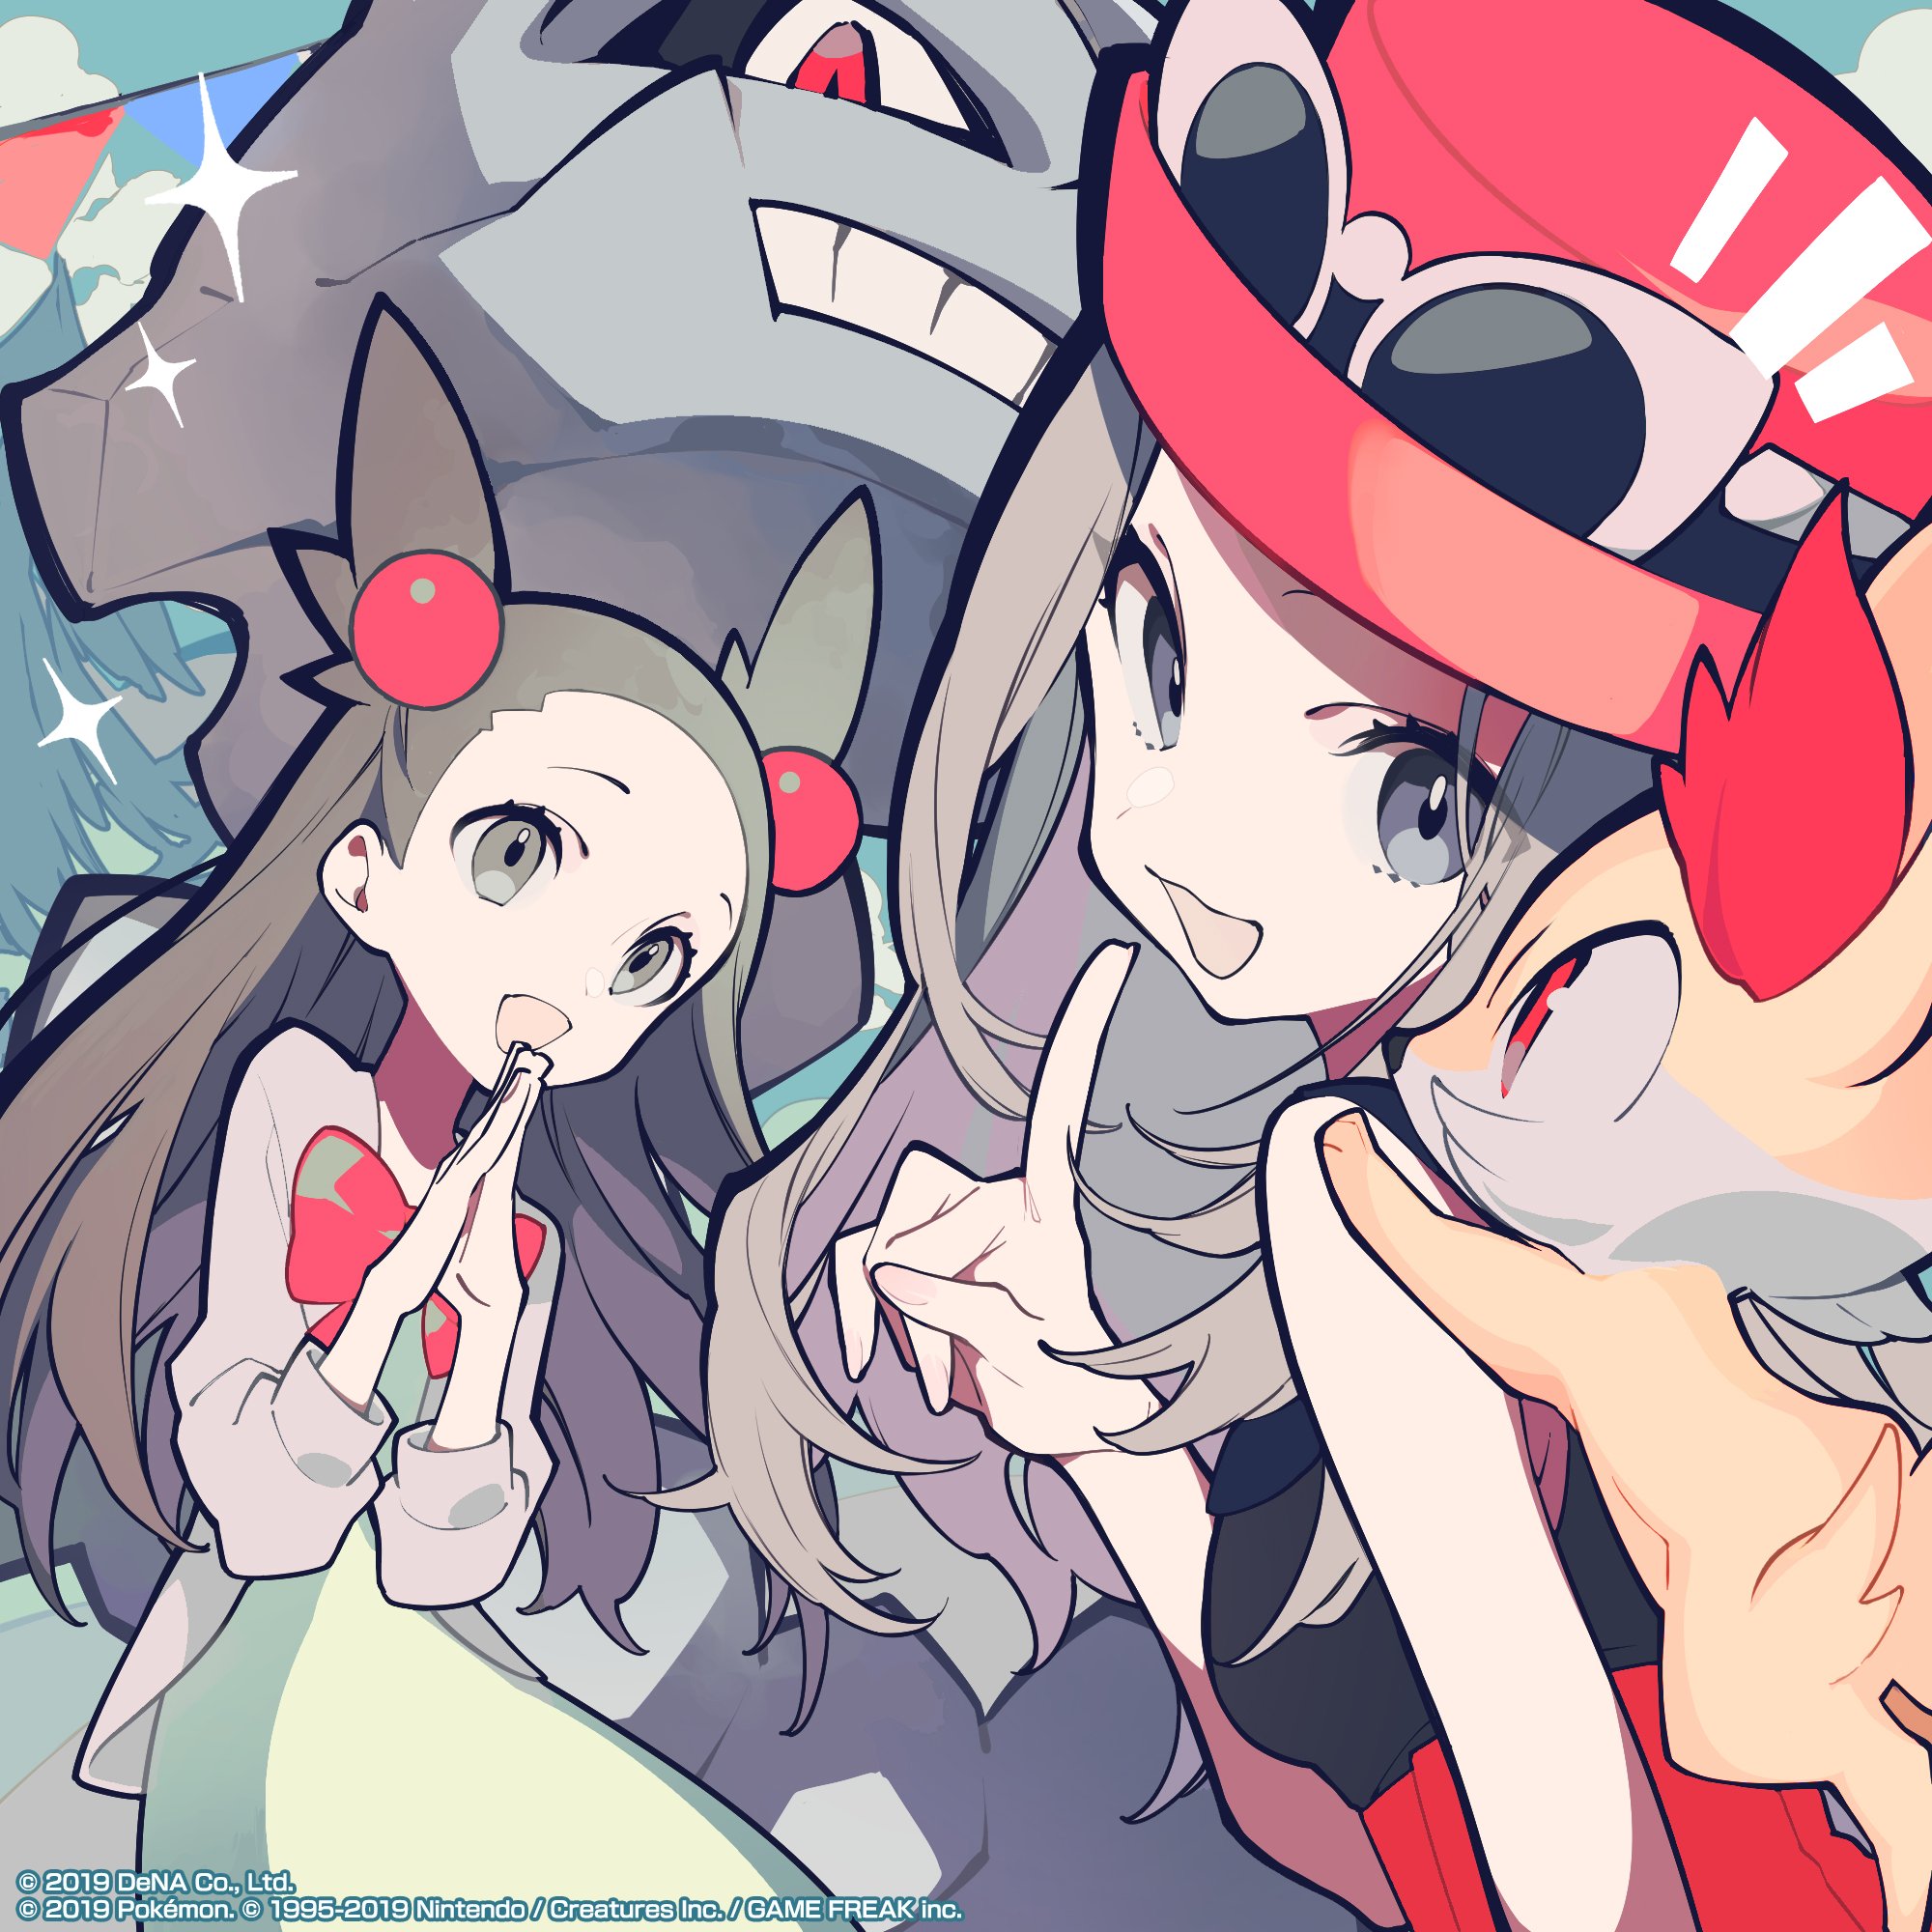 Nuevo artwork oficial de Pokémon Masters con Jasmine y Serena. 